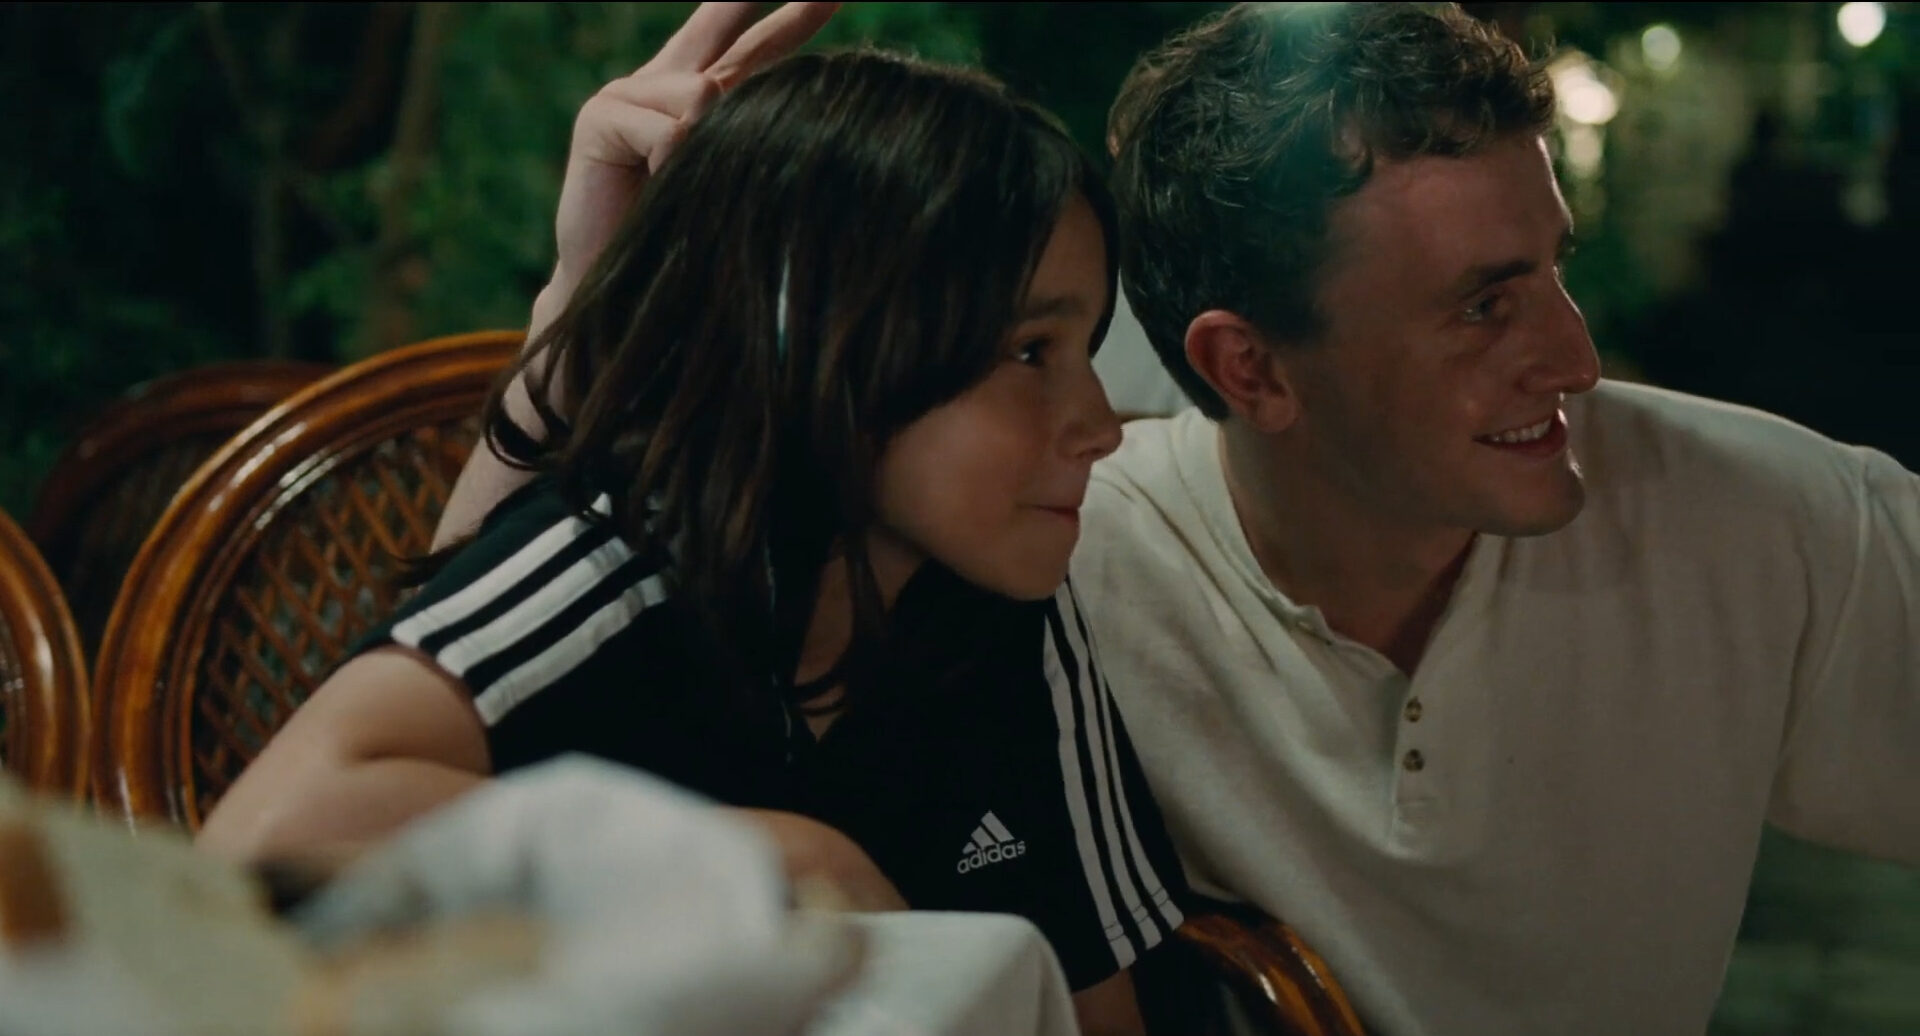 Cena do filme Aftersun, mostra pai e filha posando para uma foto, sorrindo. Por trás da menina, ele faz “chifrinho” com a mão na cabeça dela.